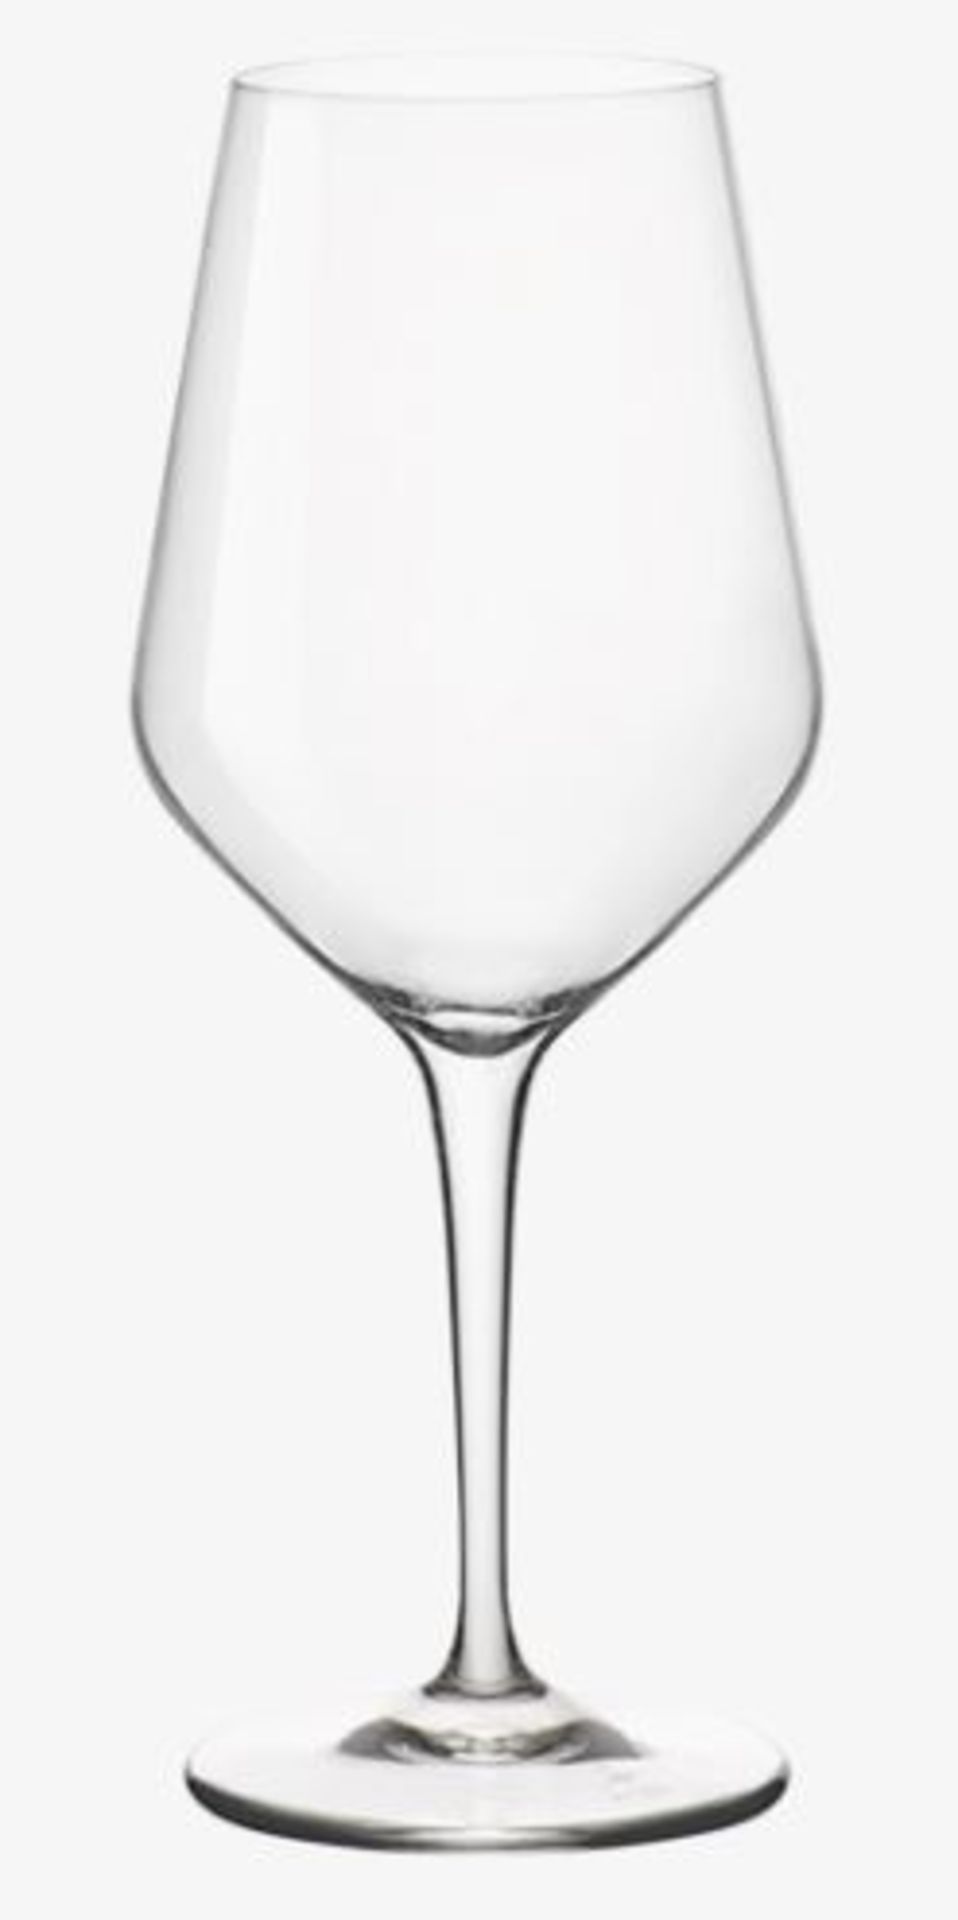 + VAT Brand New Broggi 1818 (Villeroy & Boch) Set of 2 White Wine Glasses 350ml